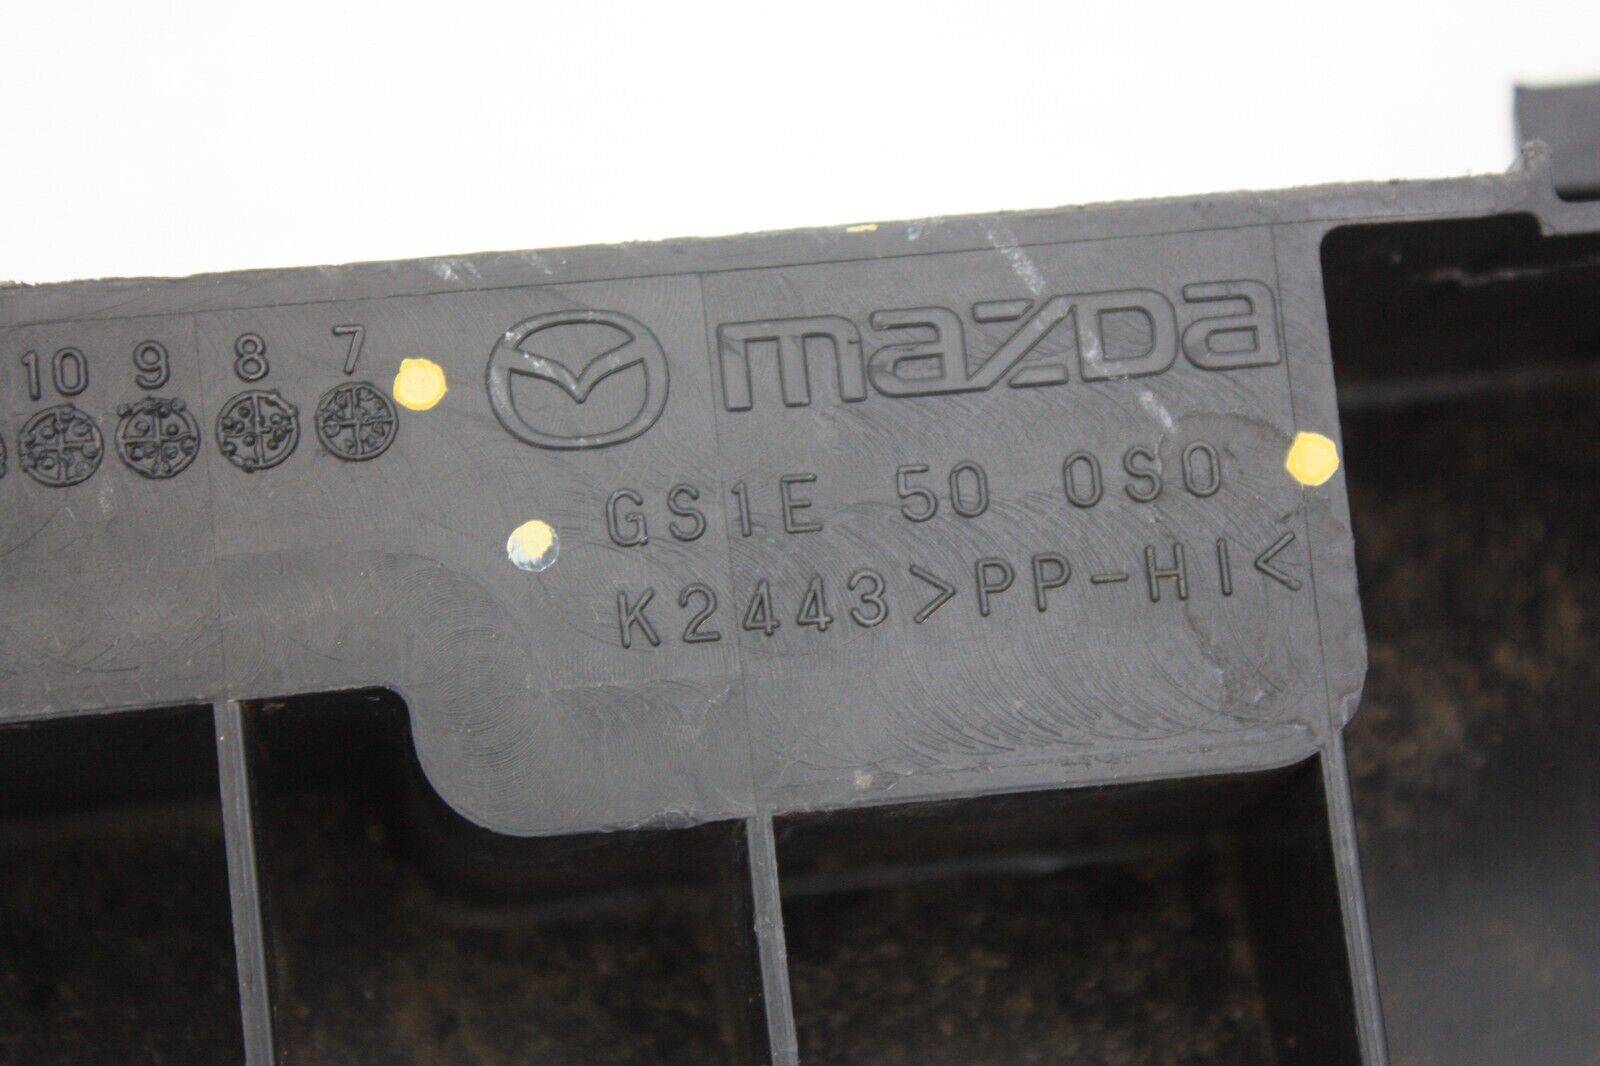 Mazda-6-Front-Bumper-Under-Tray-GS1E-500S0-Genuine-175405902627-6